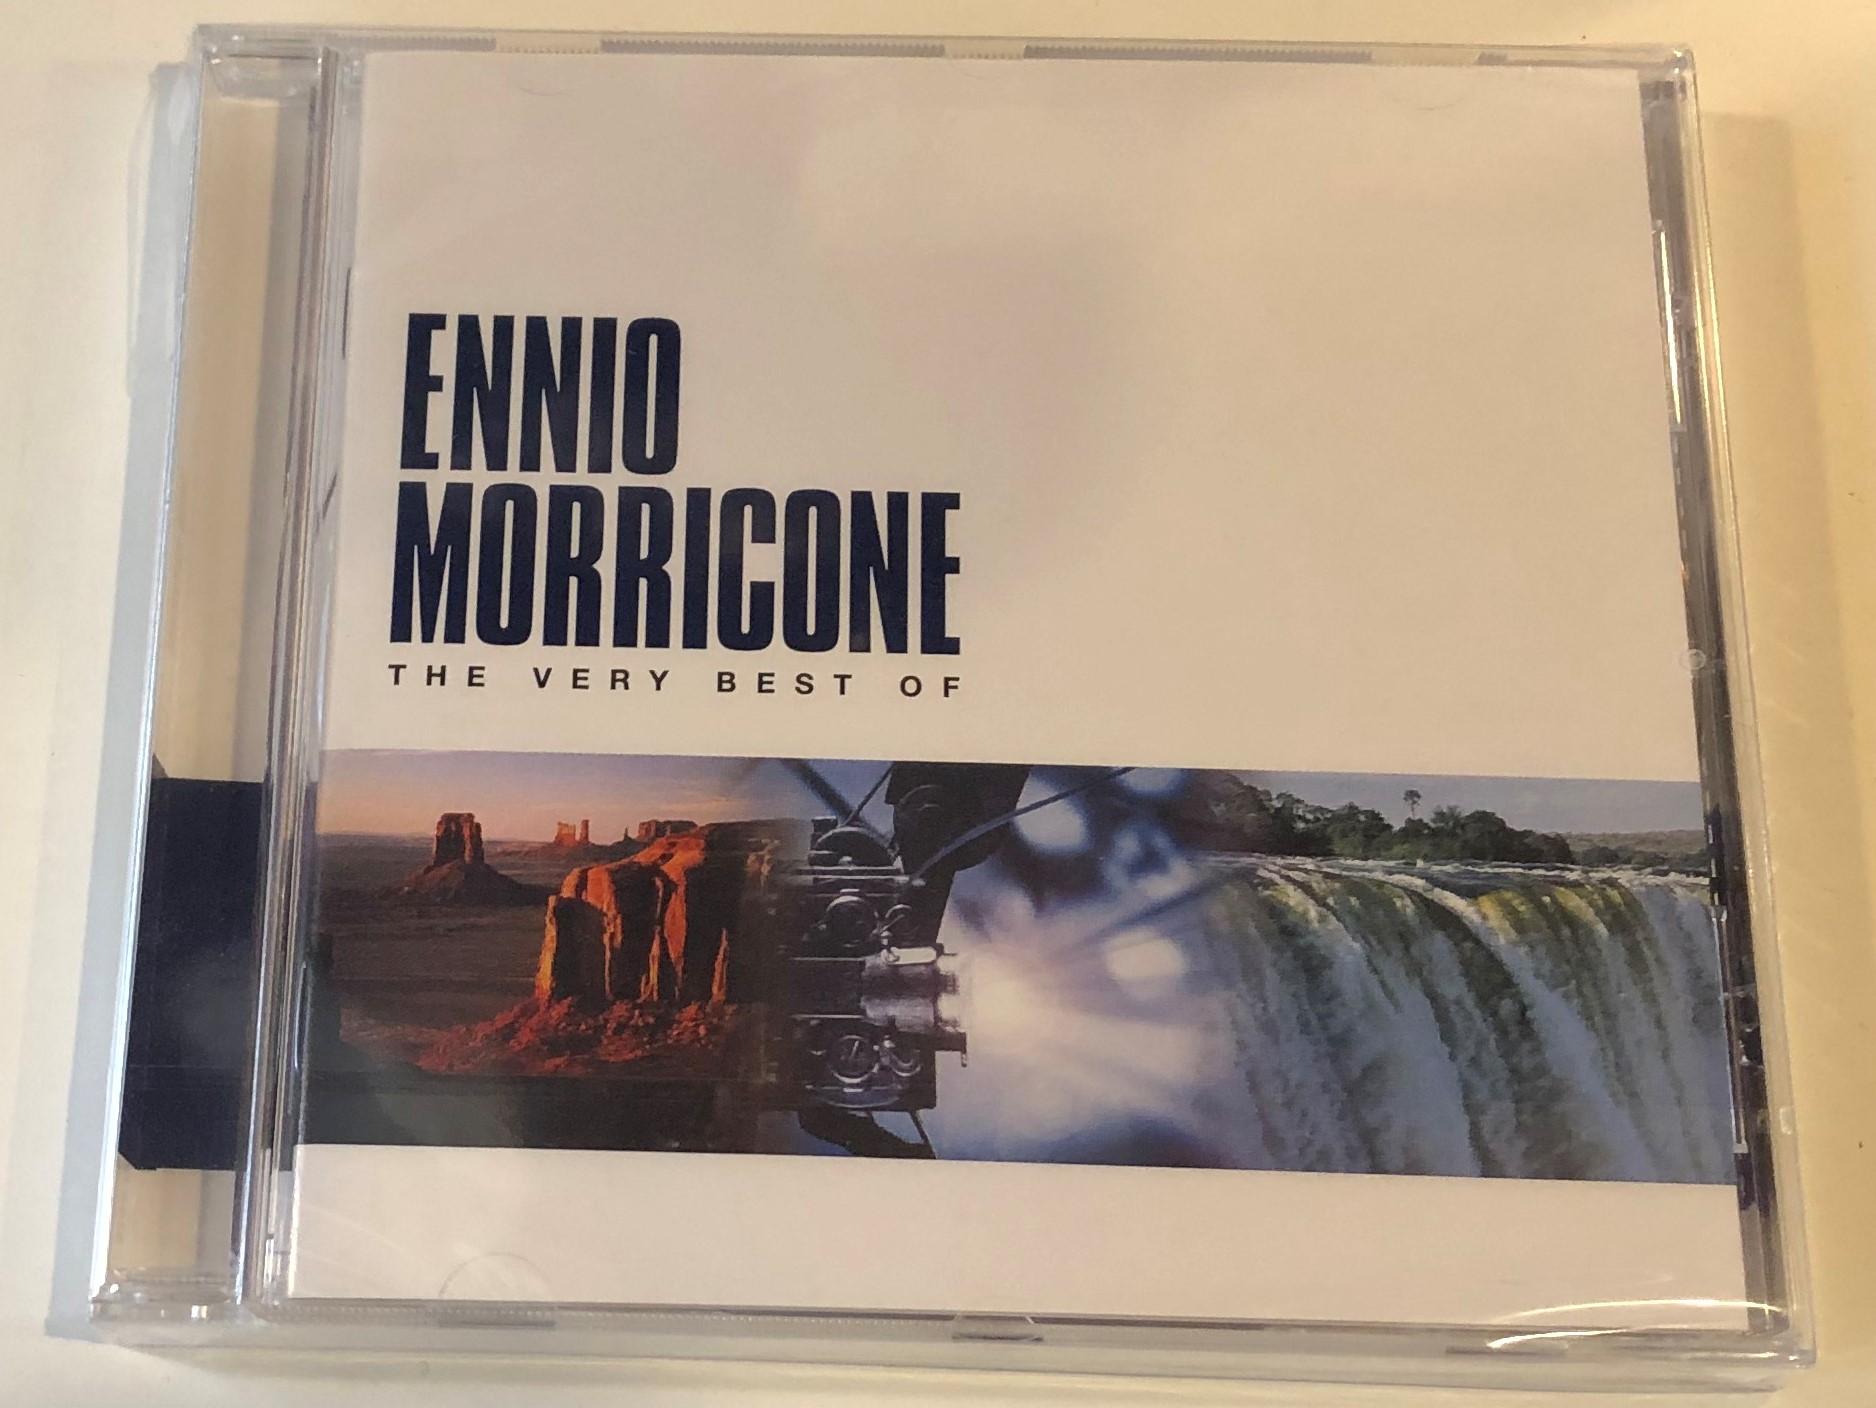 ennio-morricone-the-very-best-of-virgin-audio-cd-2000-724385024221-1-.jpg